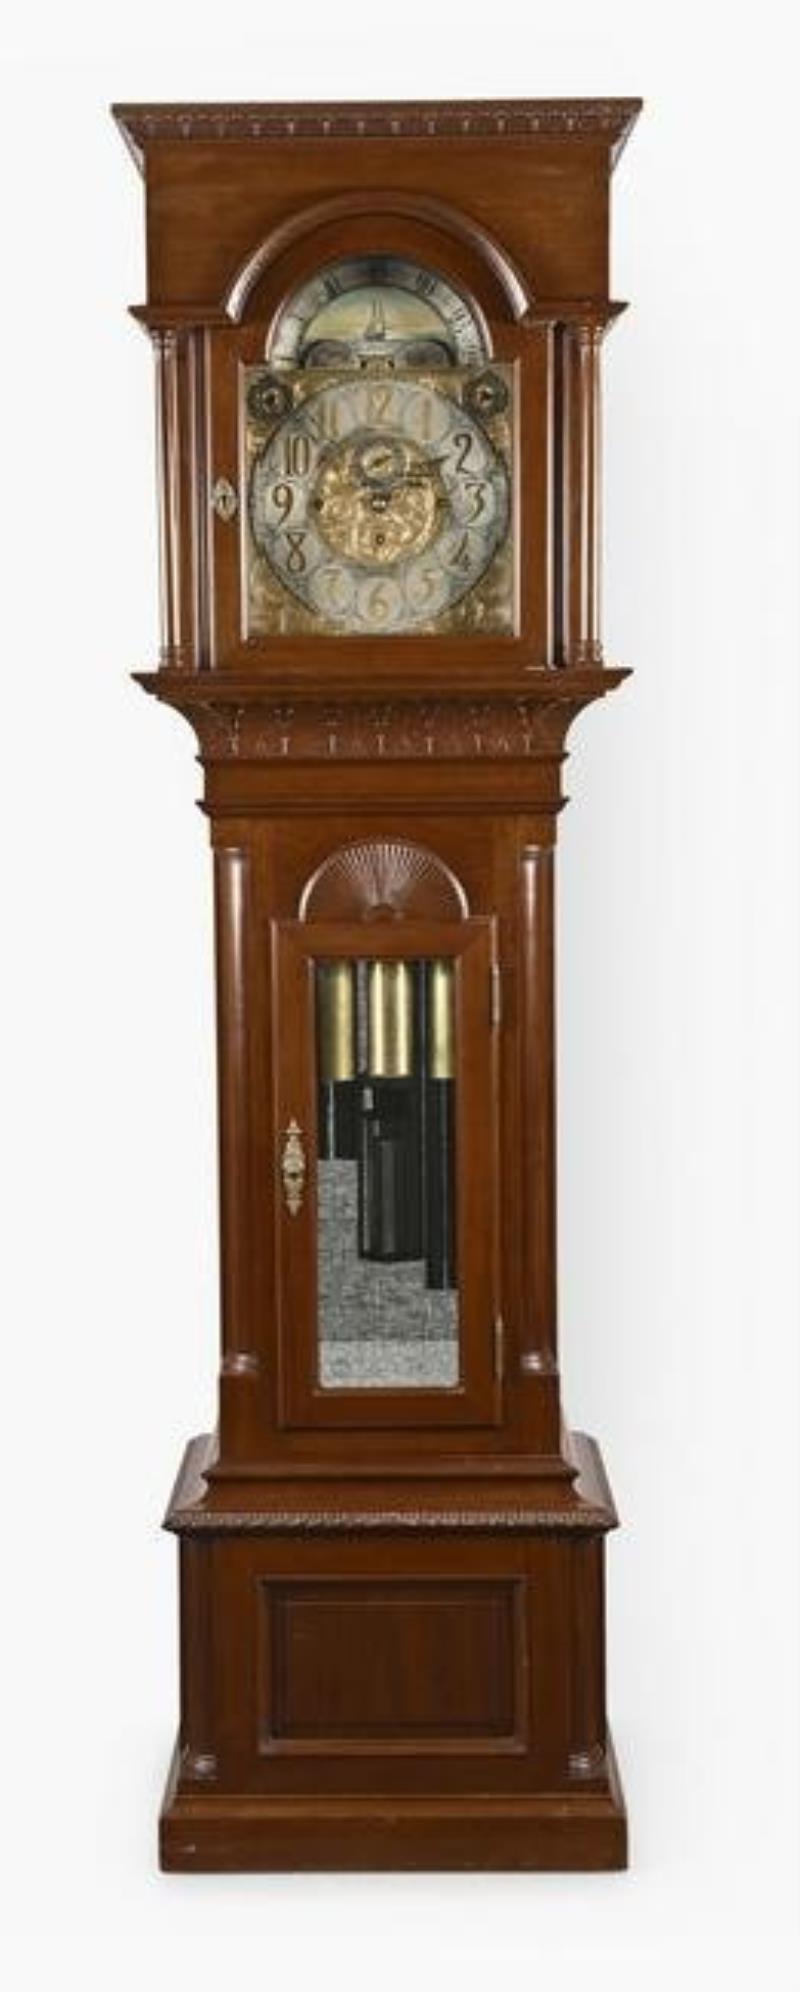 Tiffany & Co. chiming hall clock